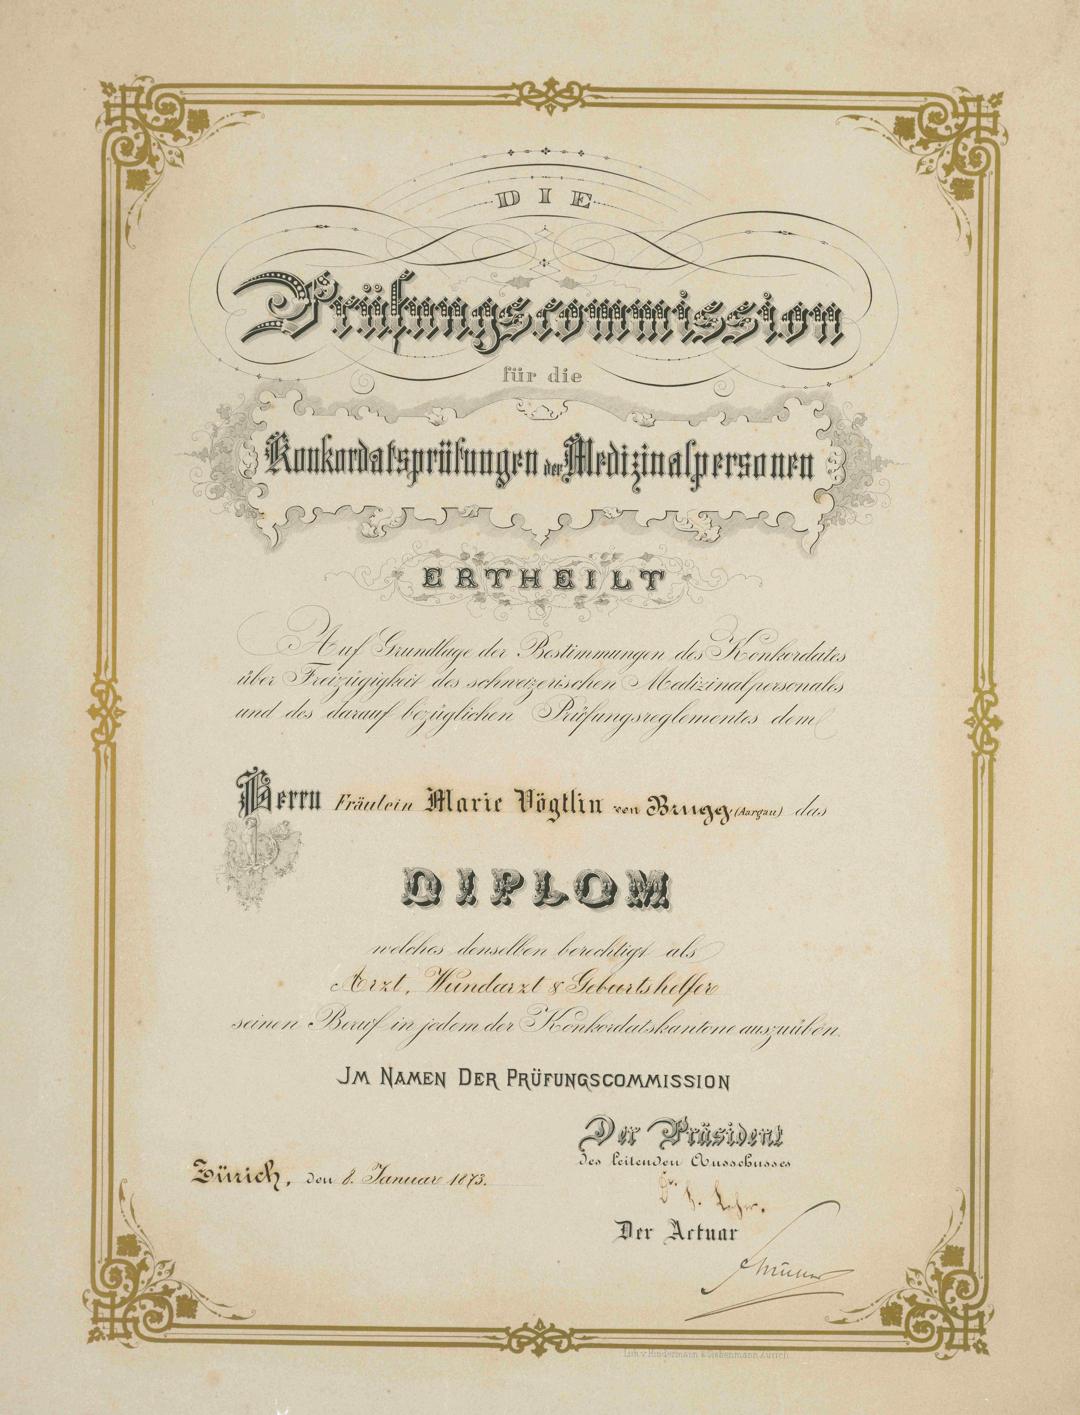 Diplom von Marie Heim-Vögtlin, der ersten Schweizer Ärztin